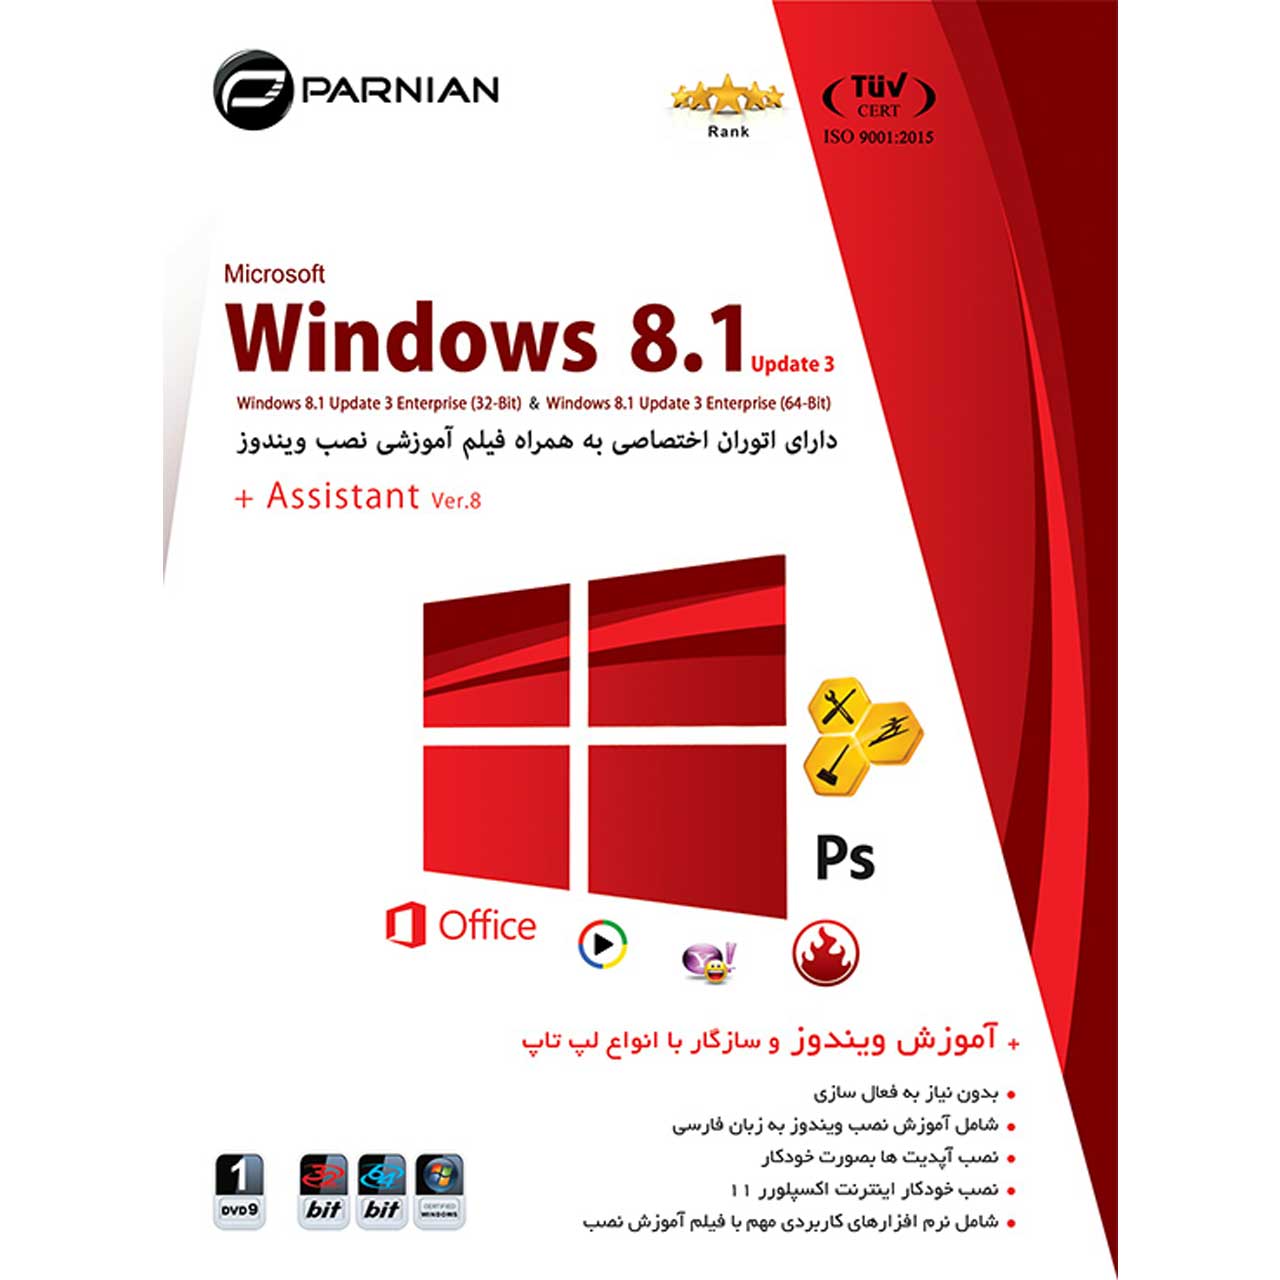 نرم افزار ویندوز 8 به همراه اسیستنت  Ver.8 نشر پرنیان